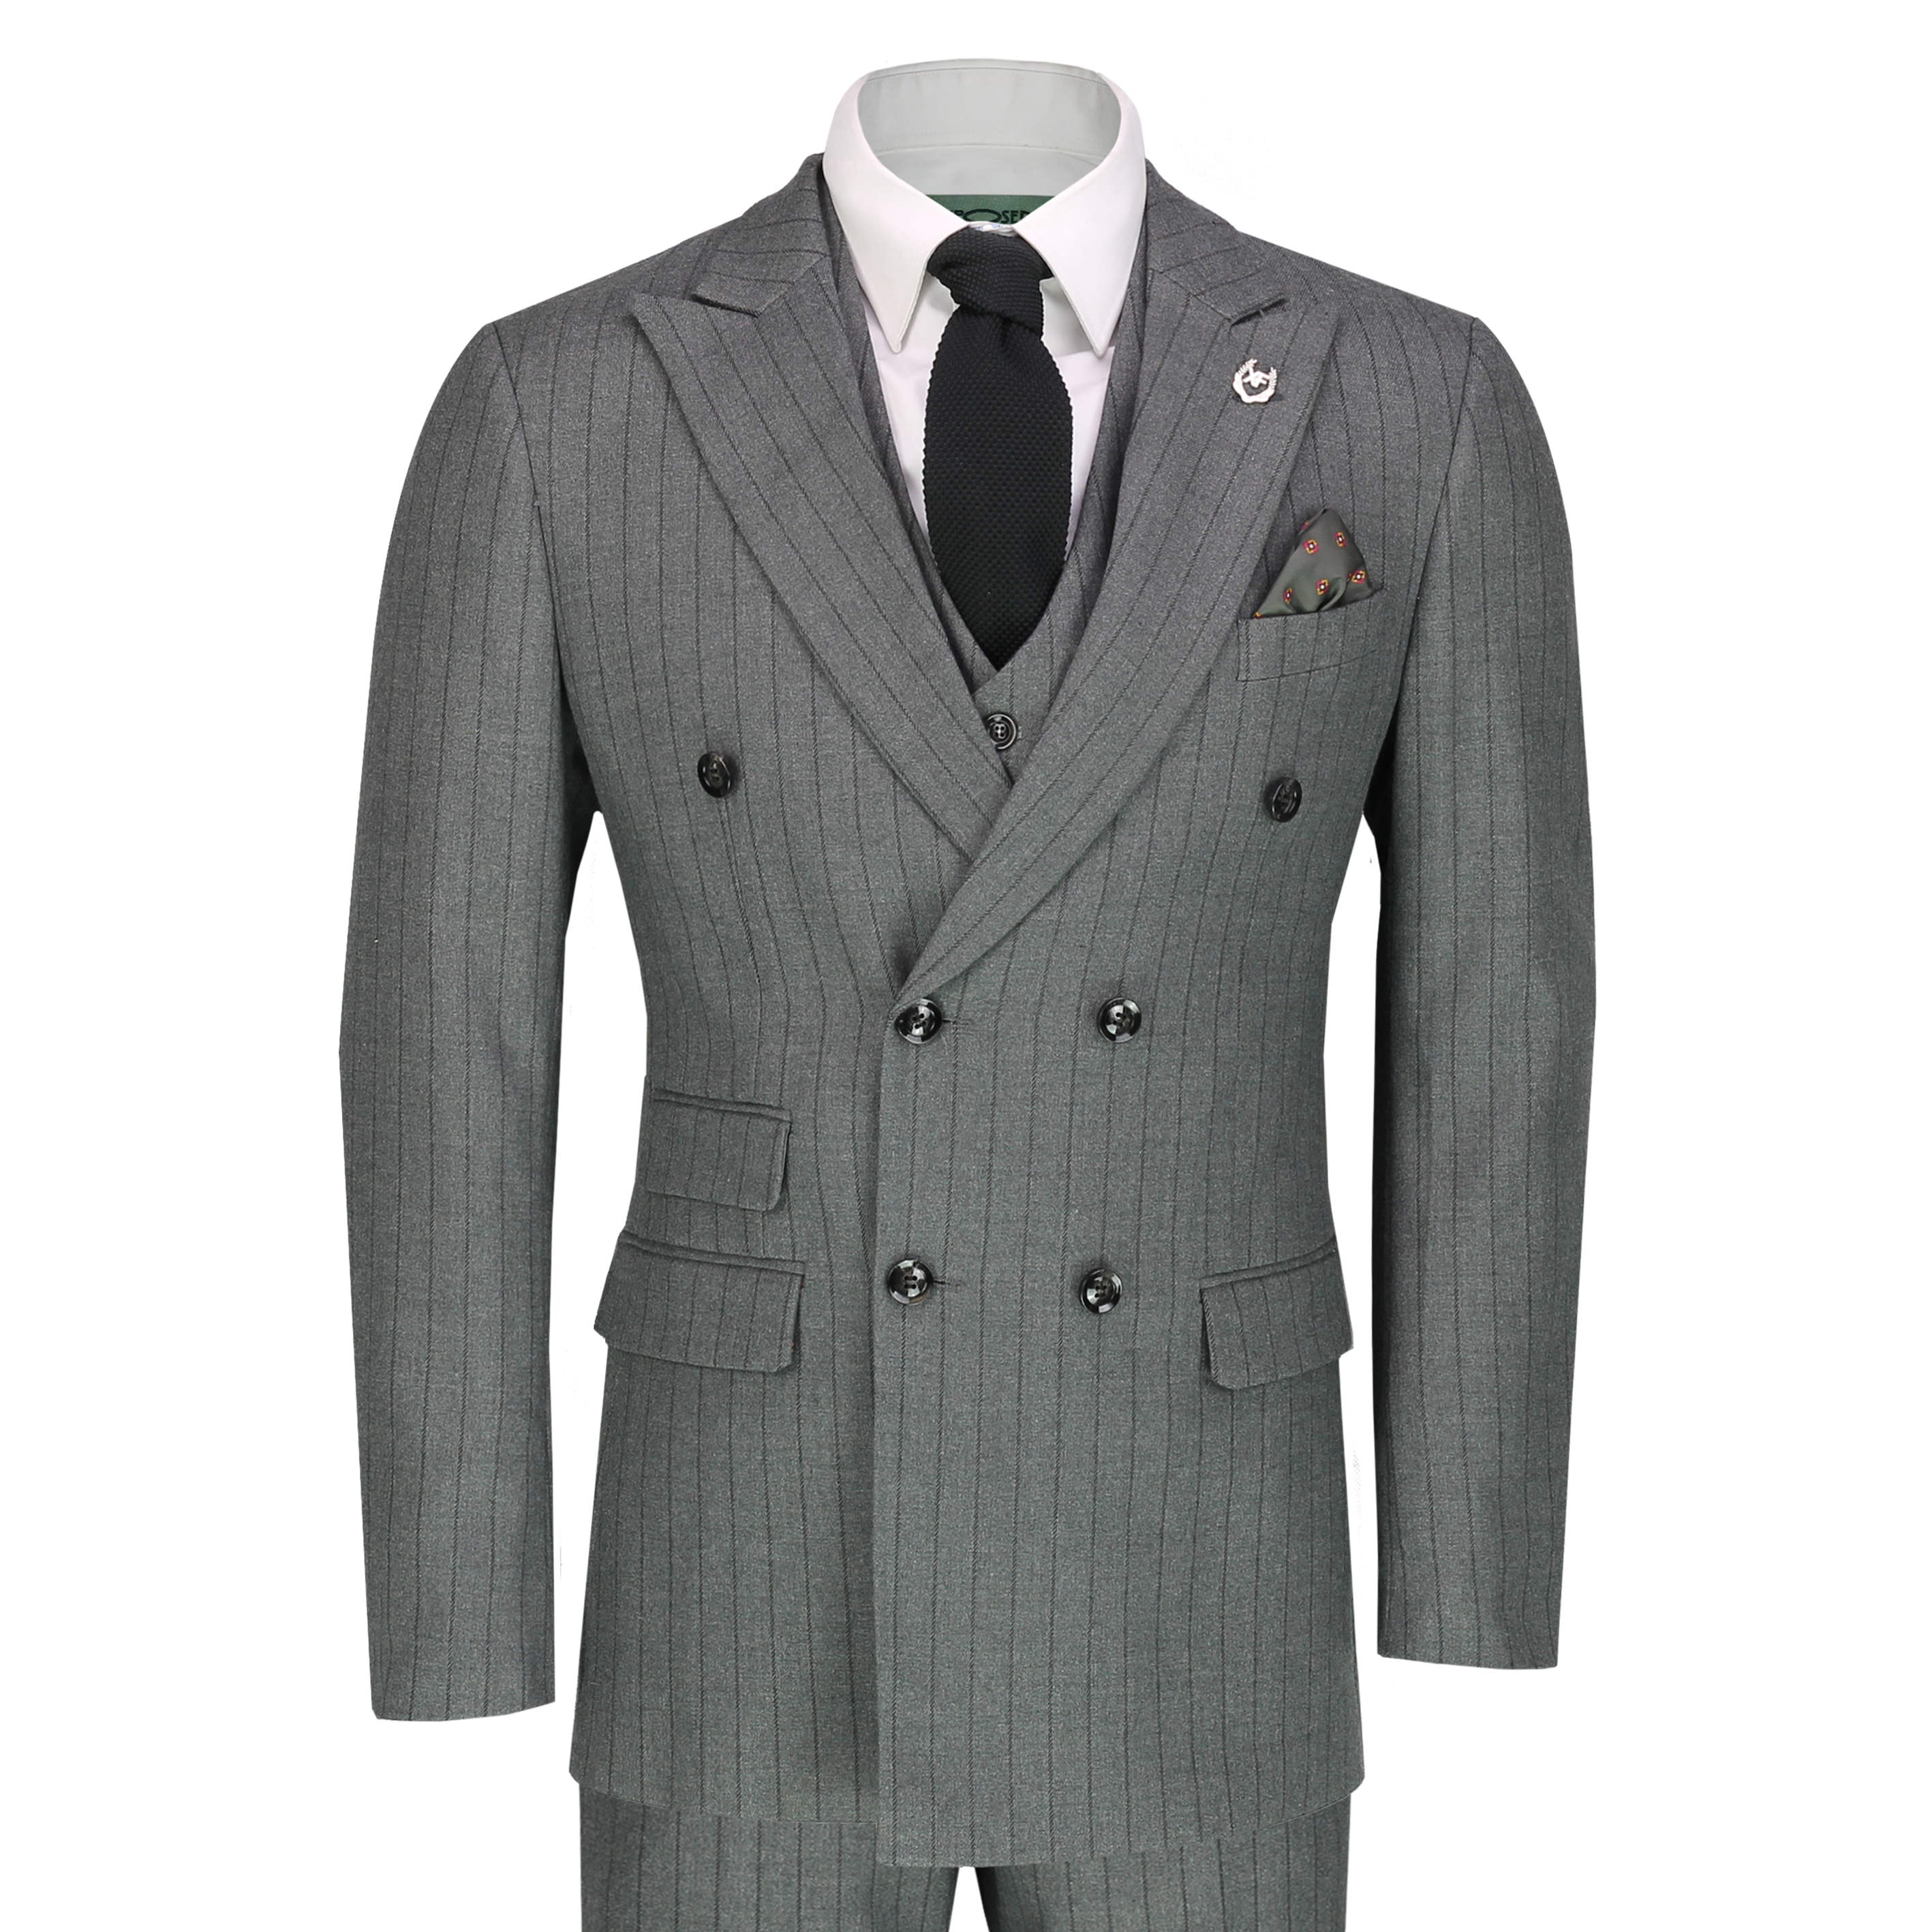 Men’s 3 Piece Double Breasted Suit Vintage Chalk Stripe Smart Classic ...